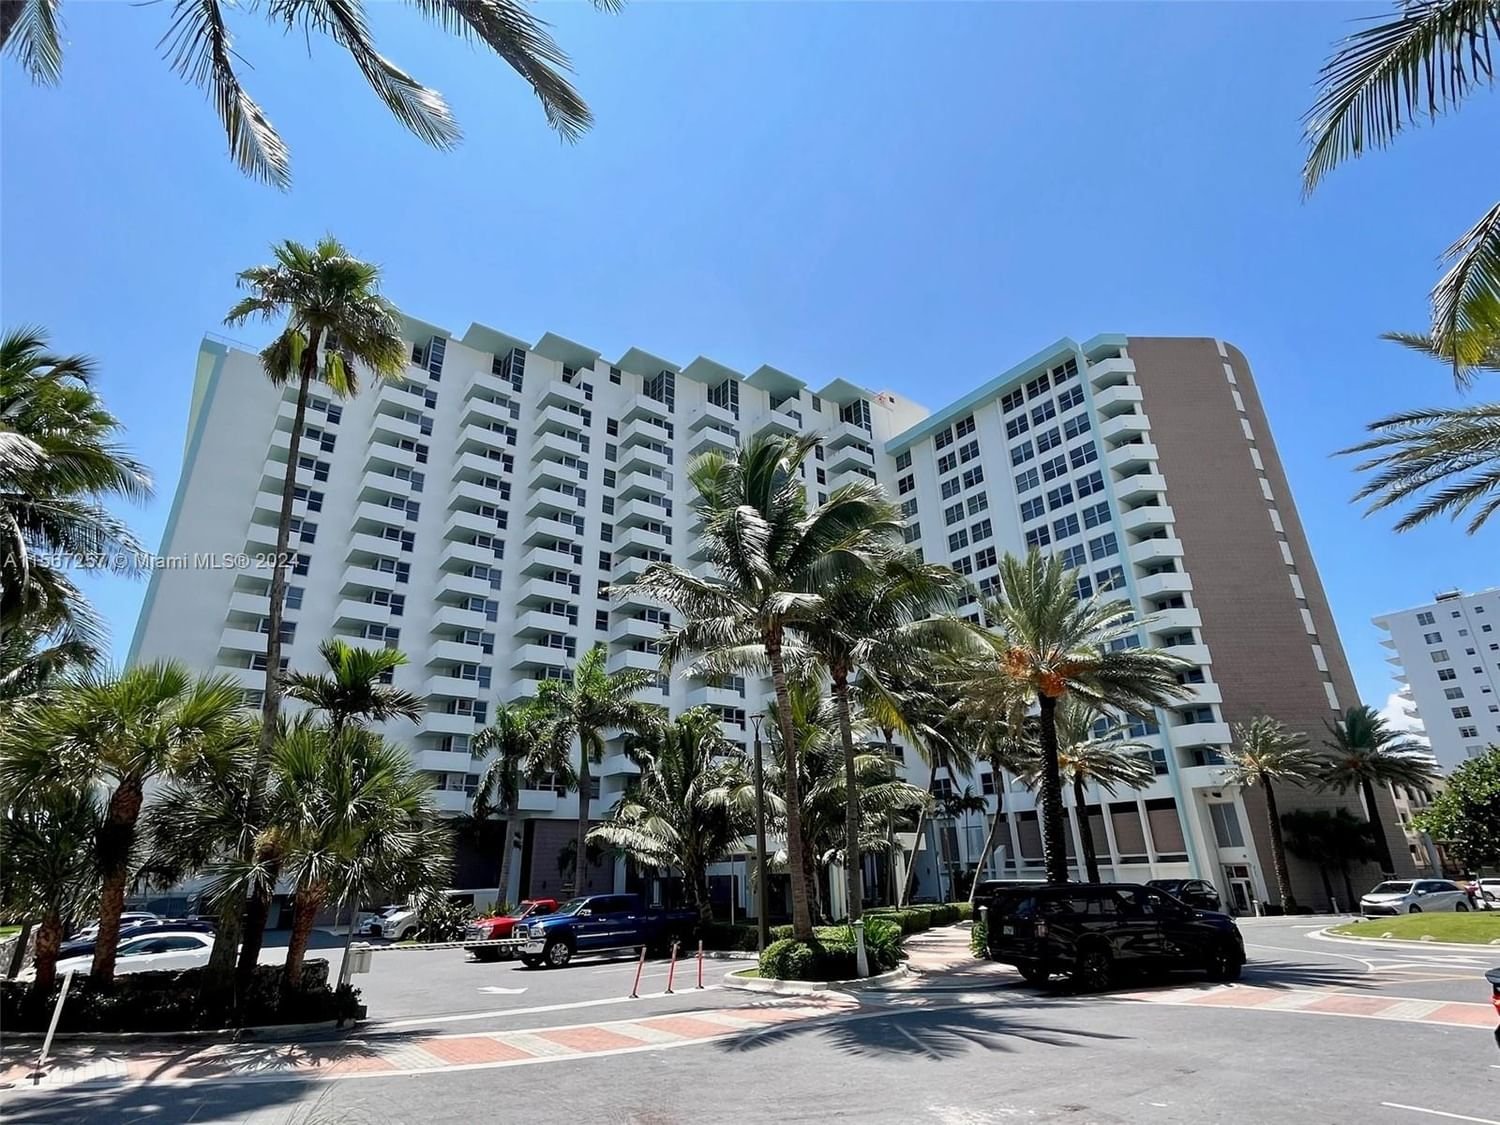 Real estate property located at 2899 Collins Ave #704, Miami-Dade County, TRITON TOWER CONDO, Miami Beach, FL